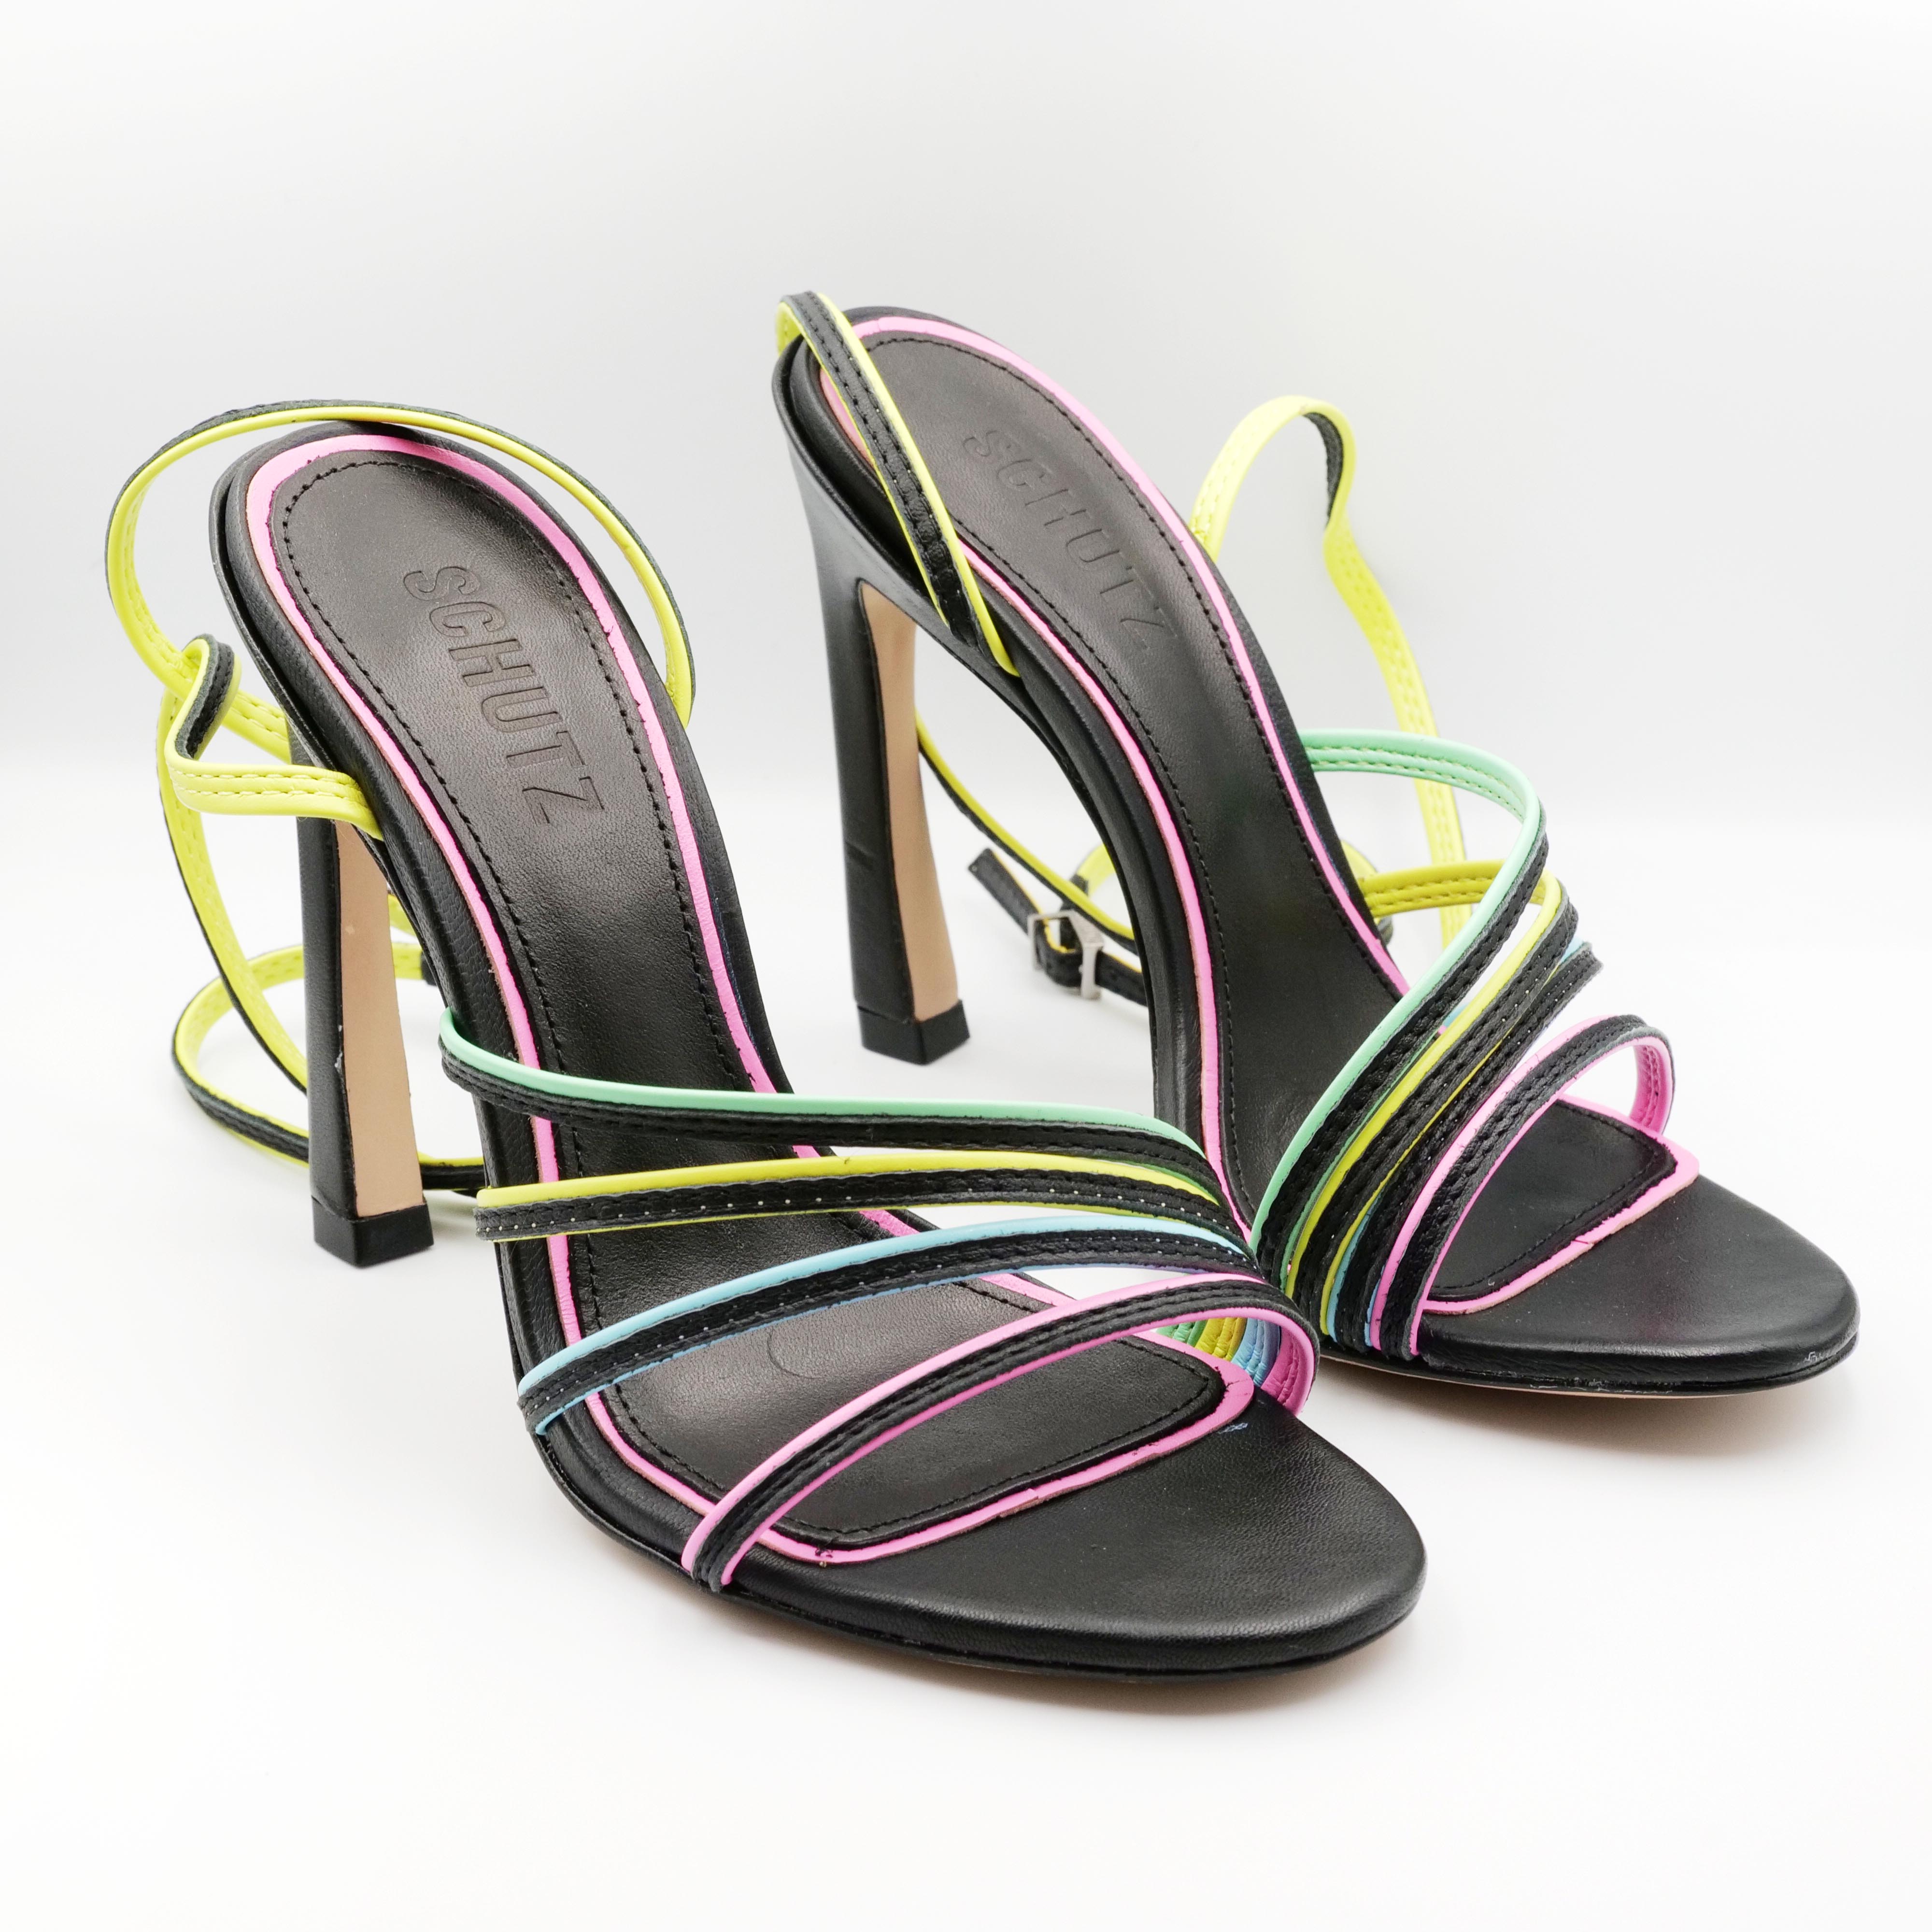 Schutz - Sandalo con tacco alto in pelle nero con fasce colorate